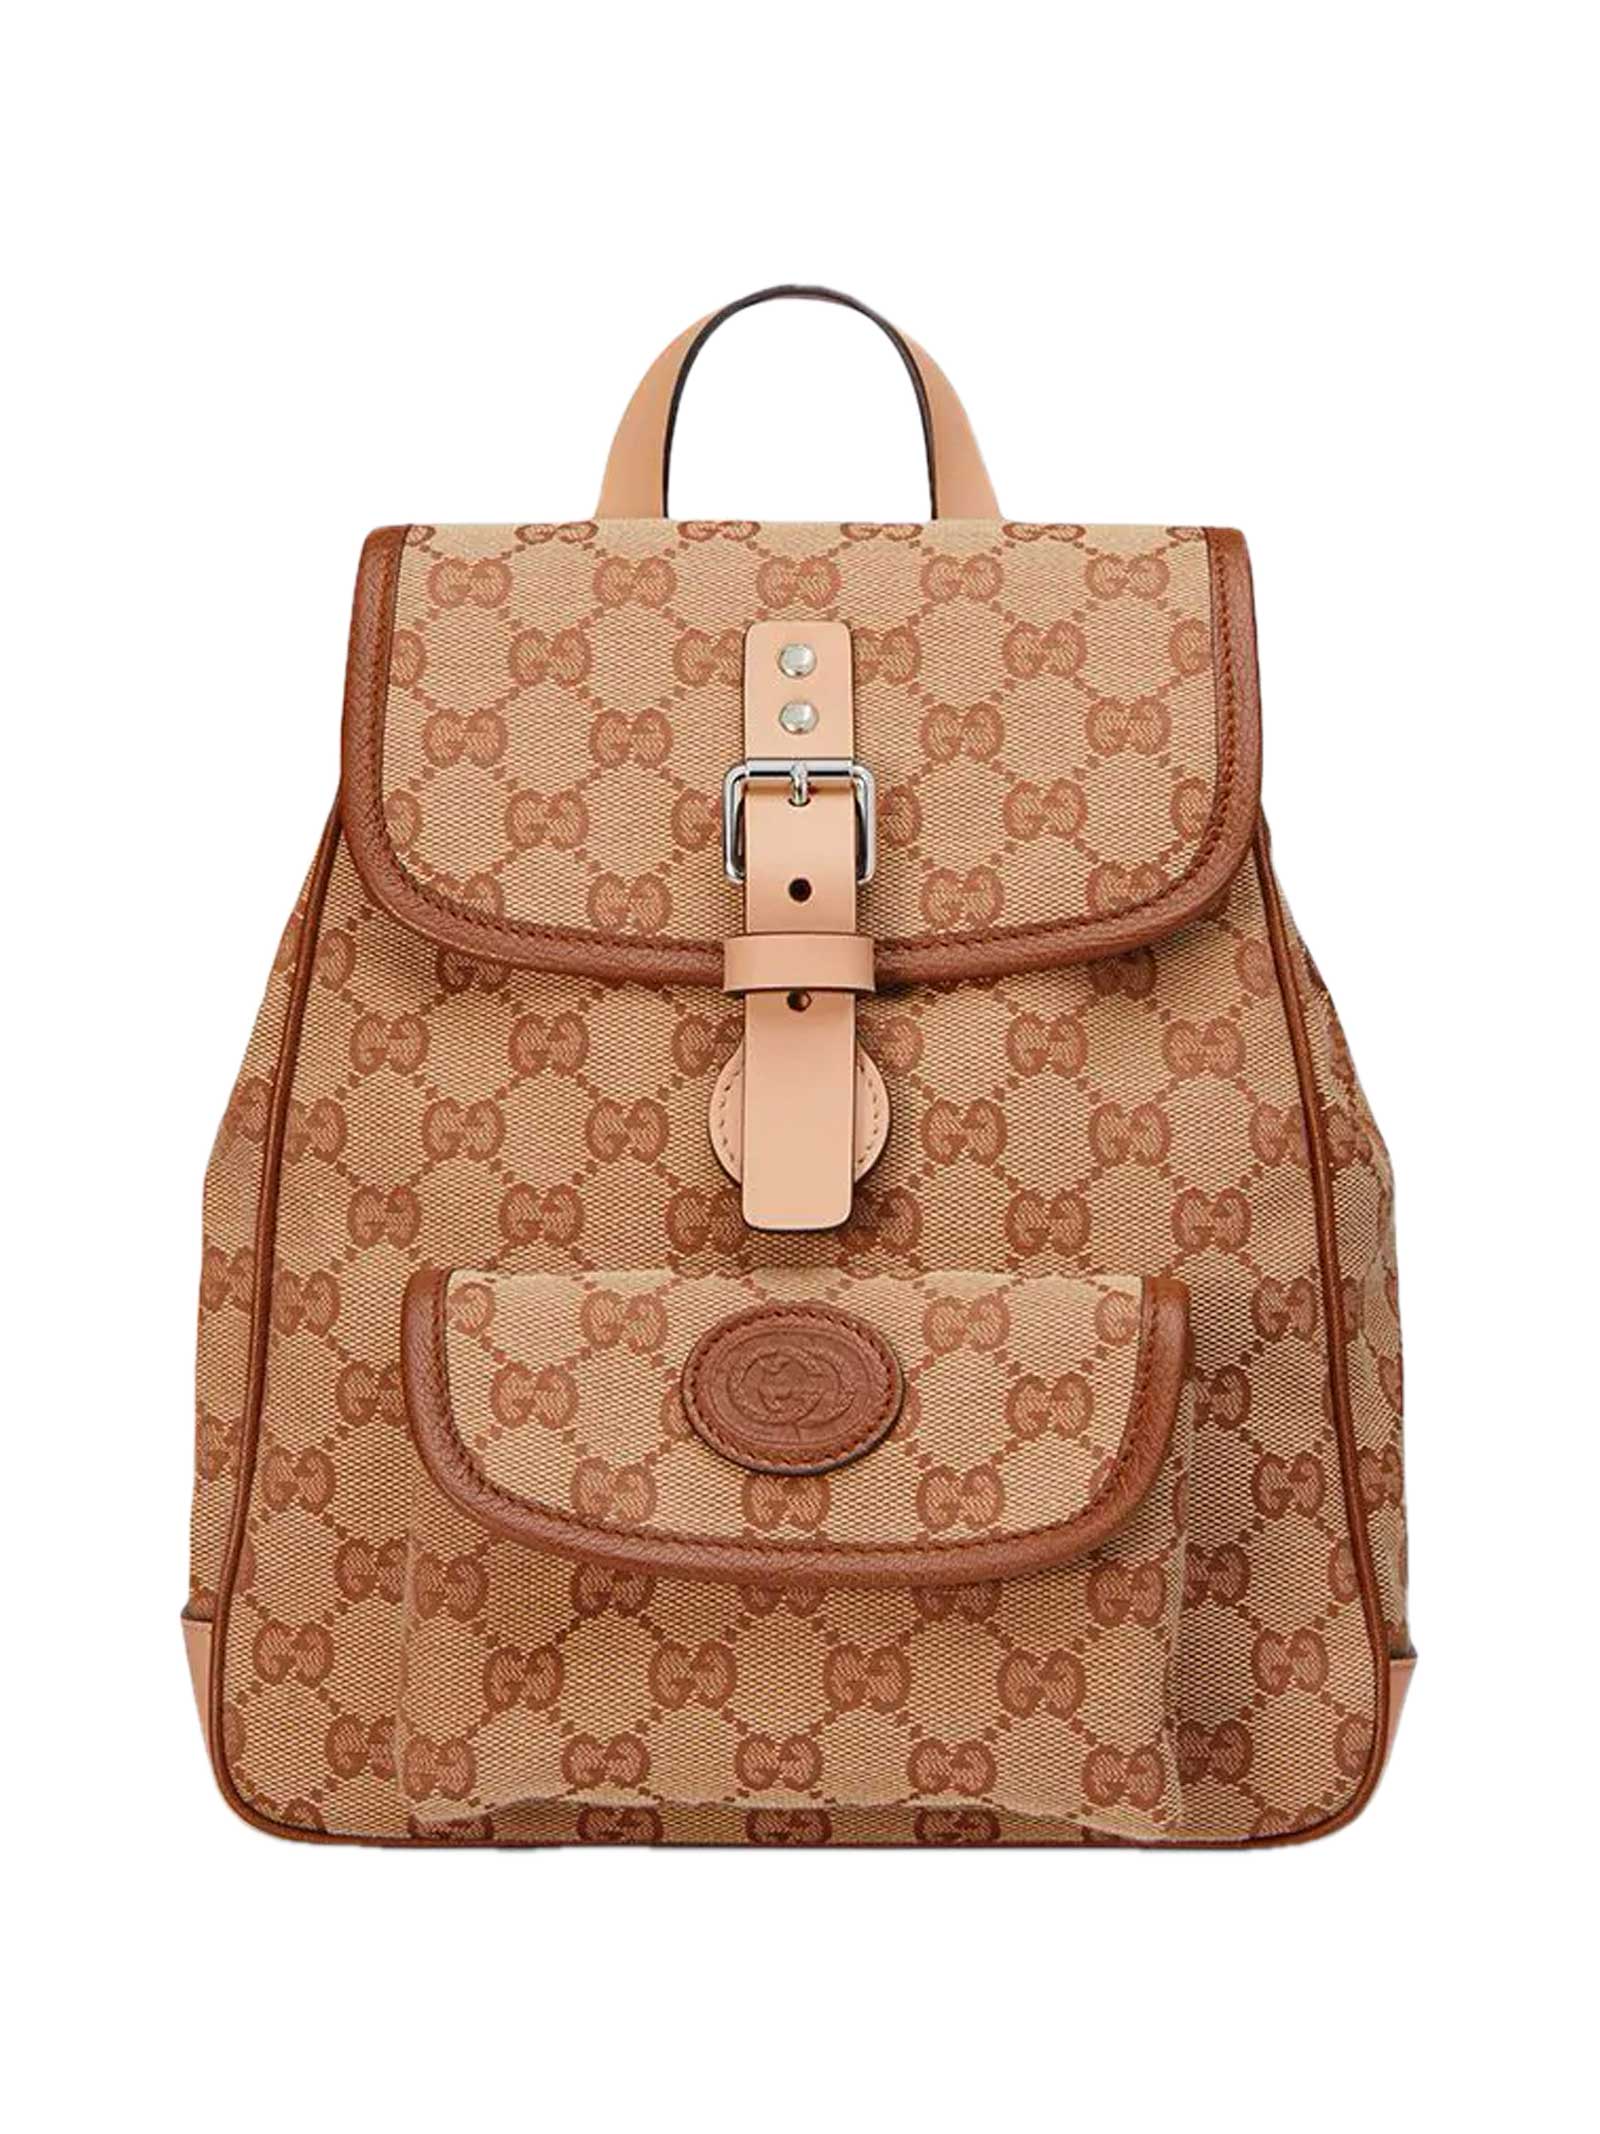 Gucci Beige Backpack